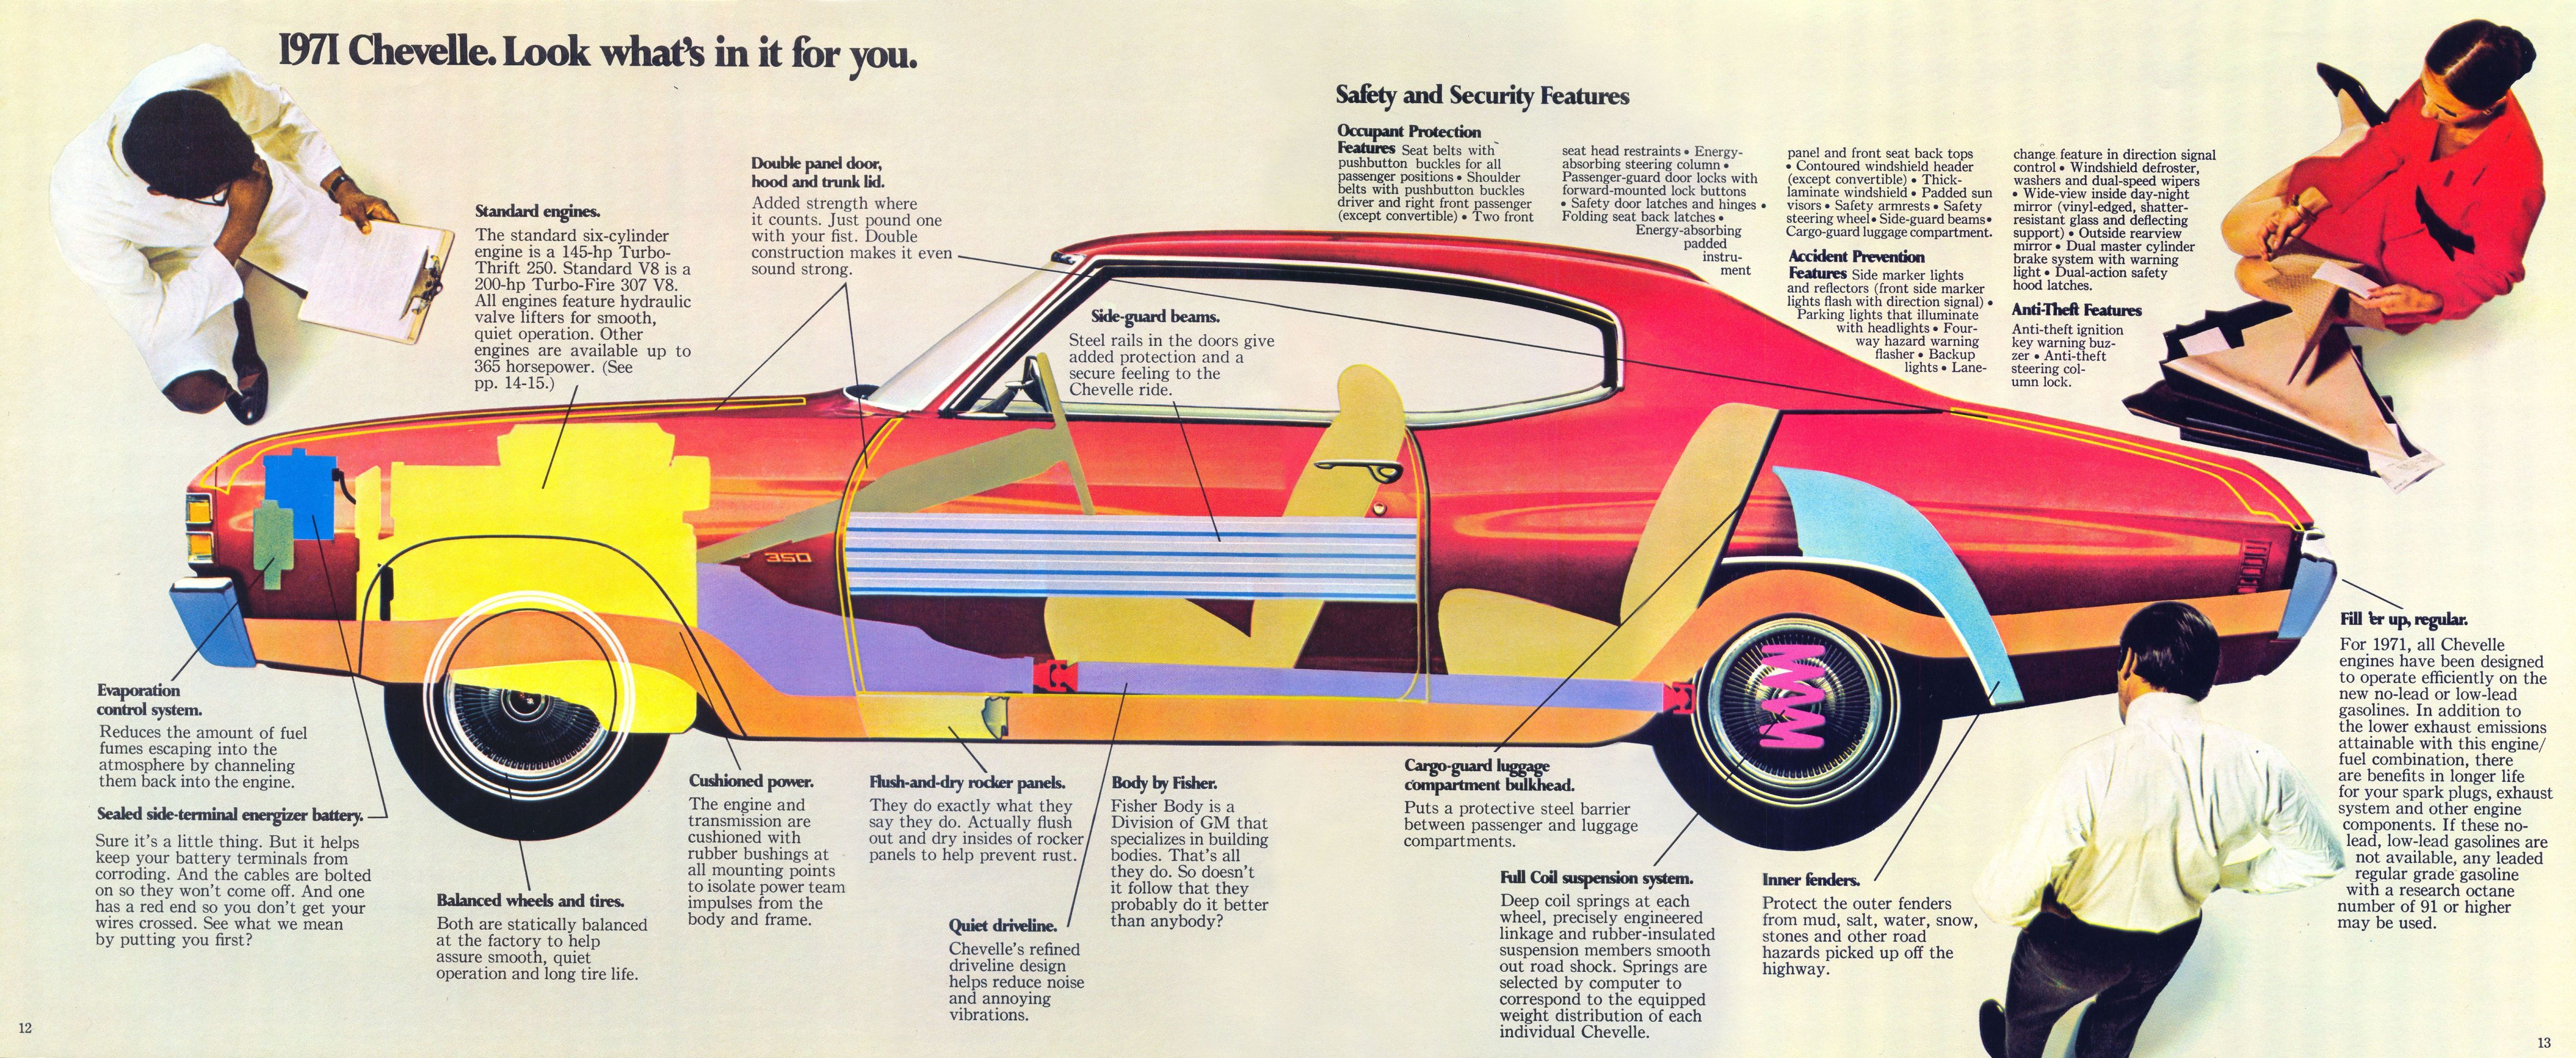 1971 Chevrolet Chevelle brochure